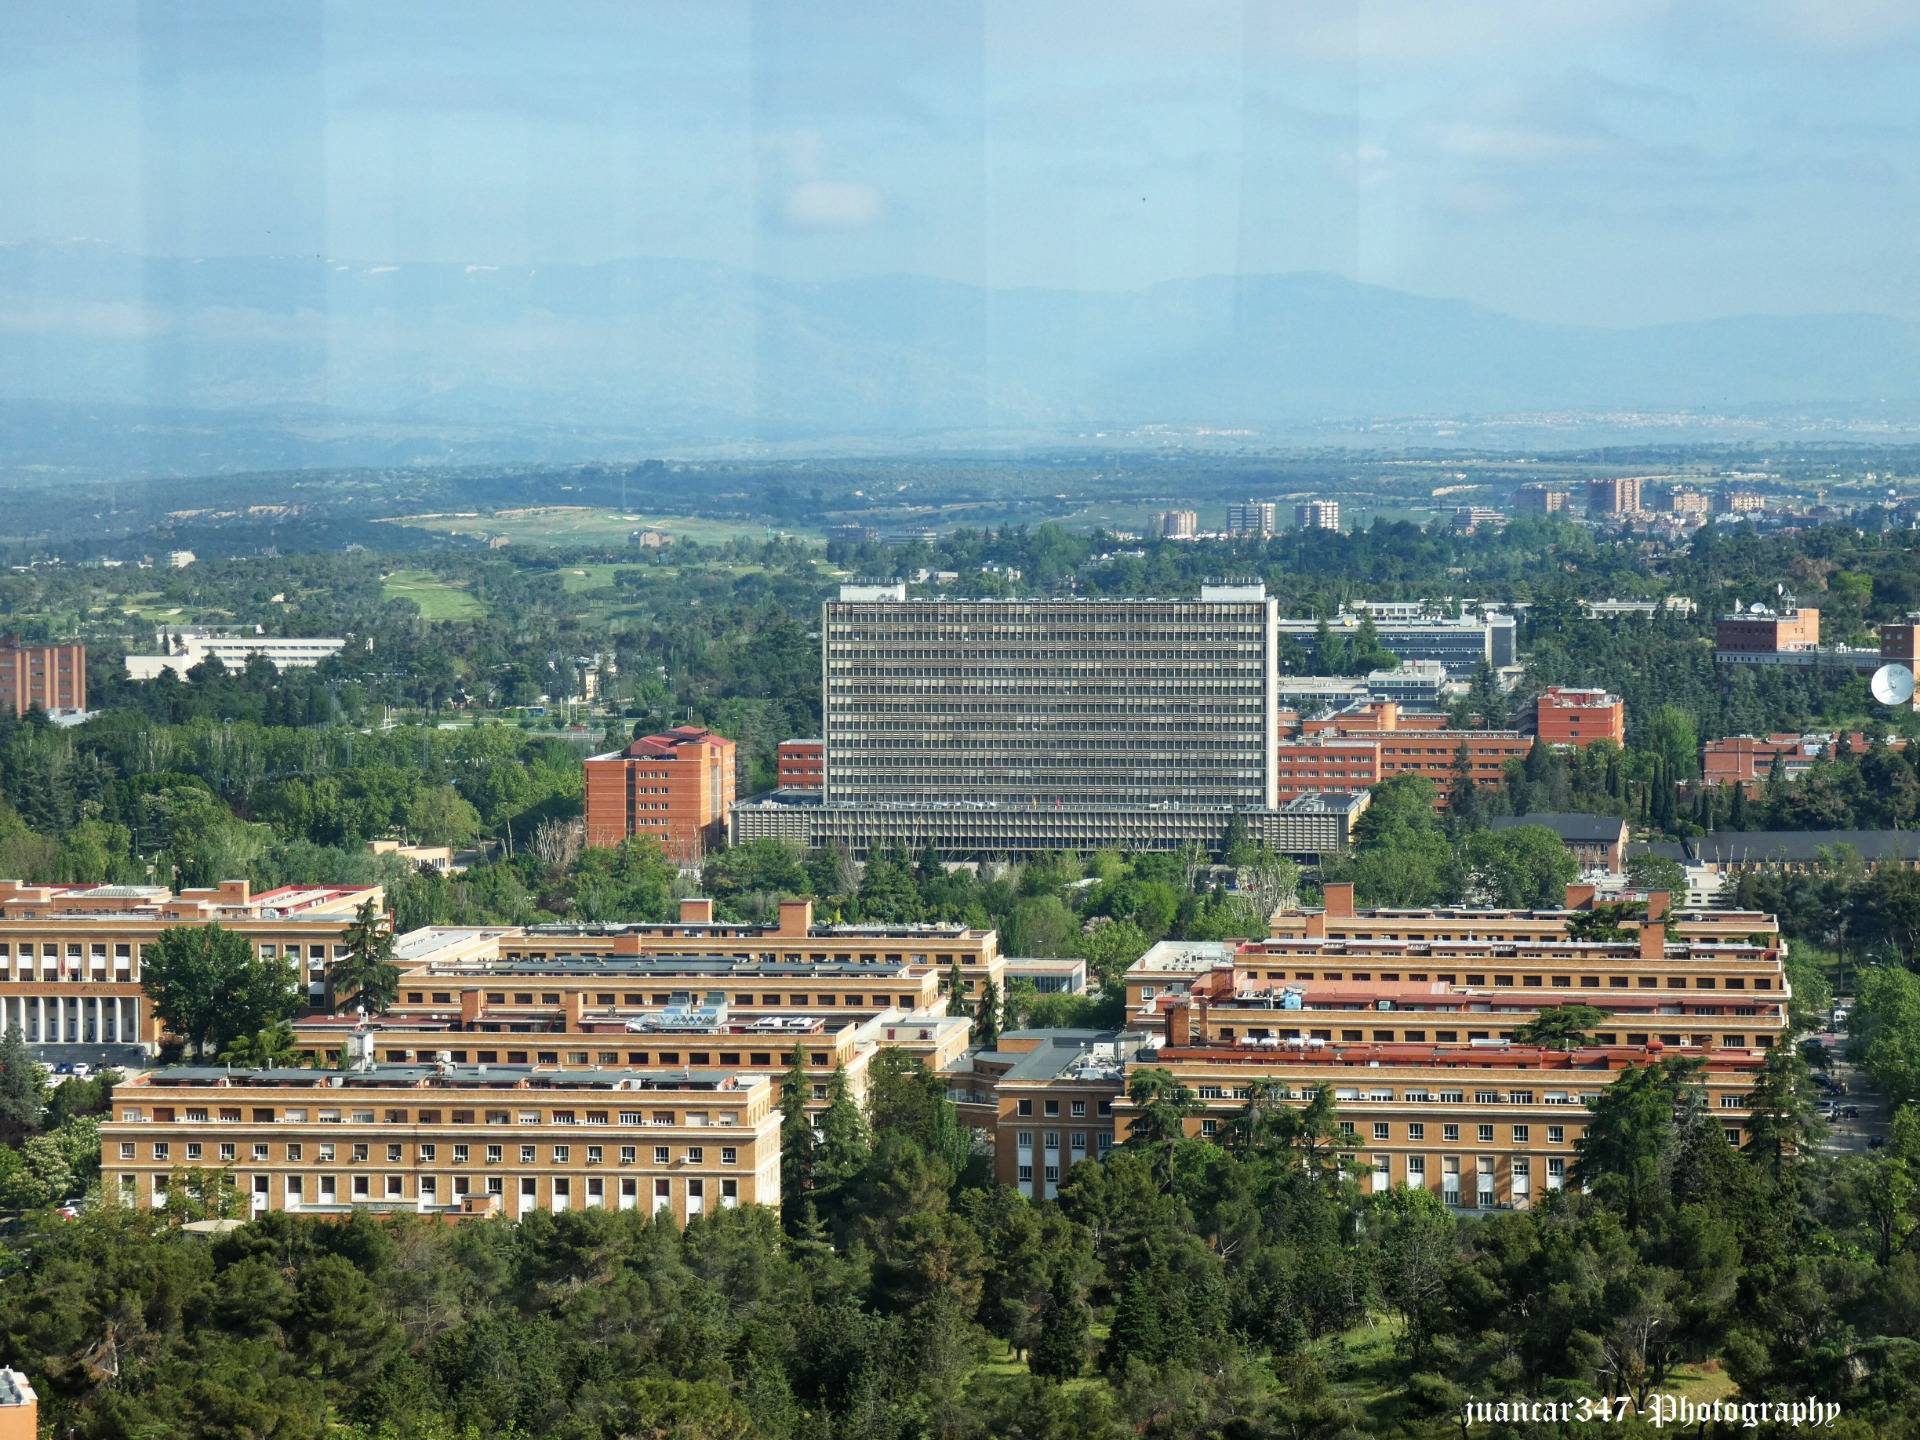 Panoramic of the University City